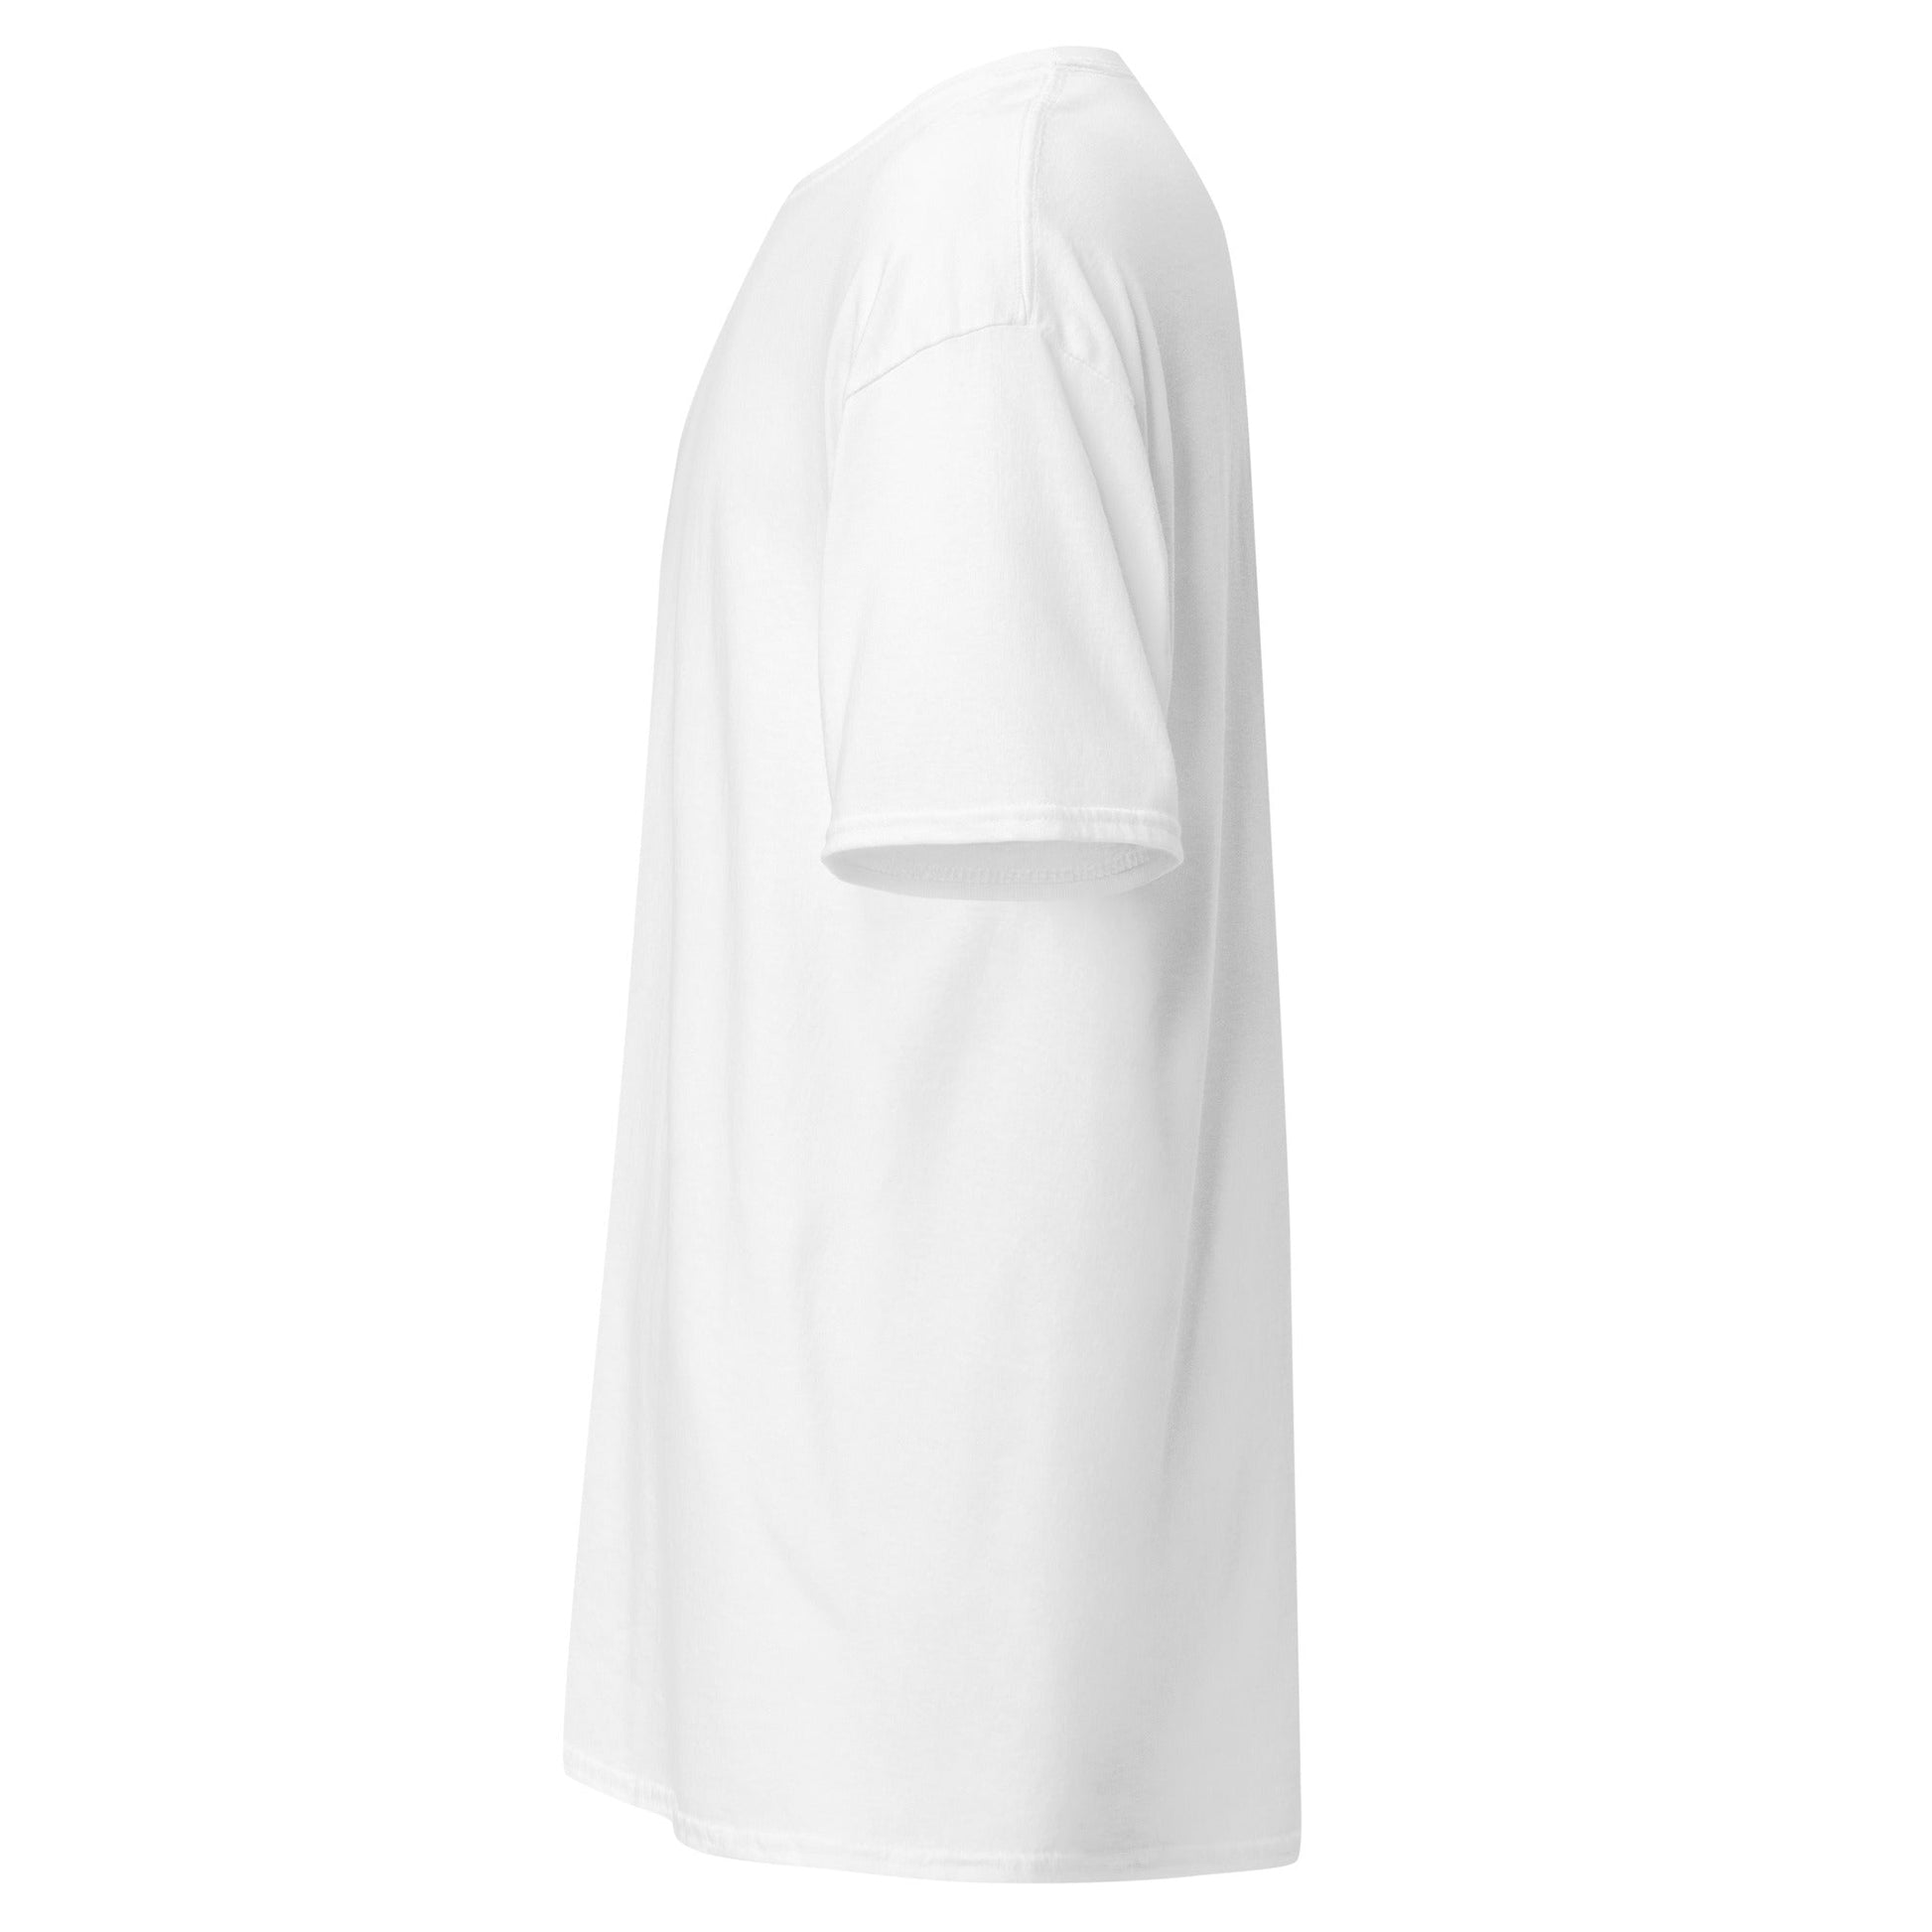 Descubre la Camiseta Blanca de Modal , una prenda de elegancia y comodidad en color blanco. Ideal para cualquier ocasión. envíos a Guatemala